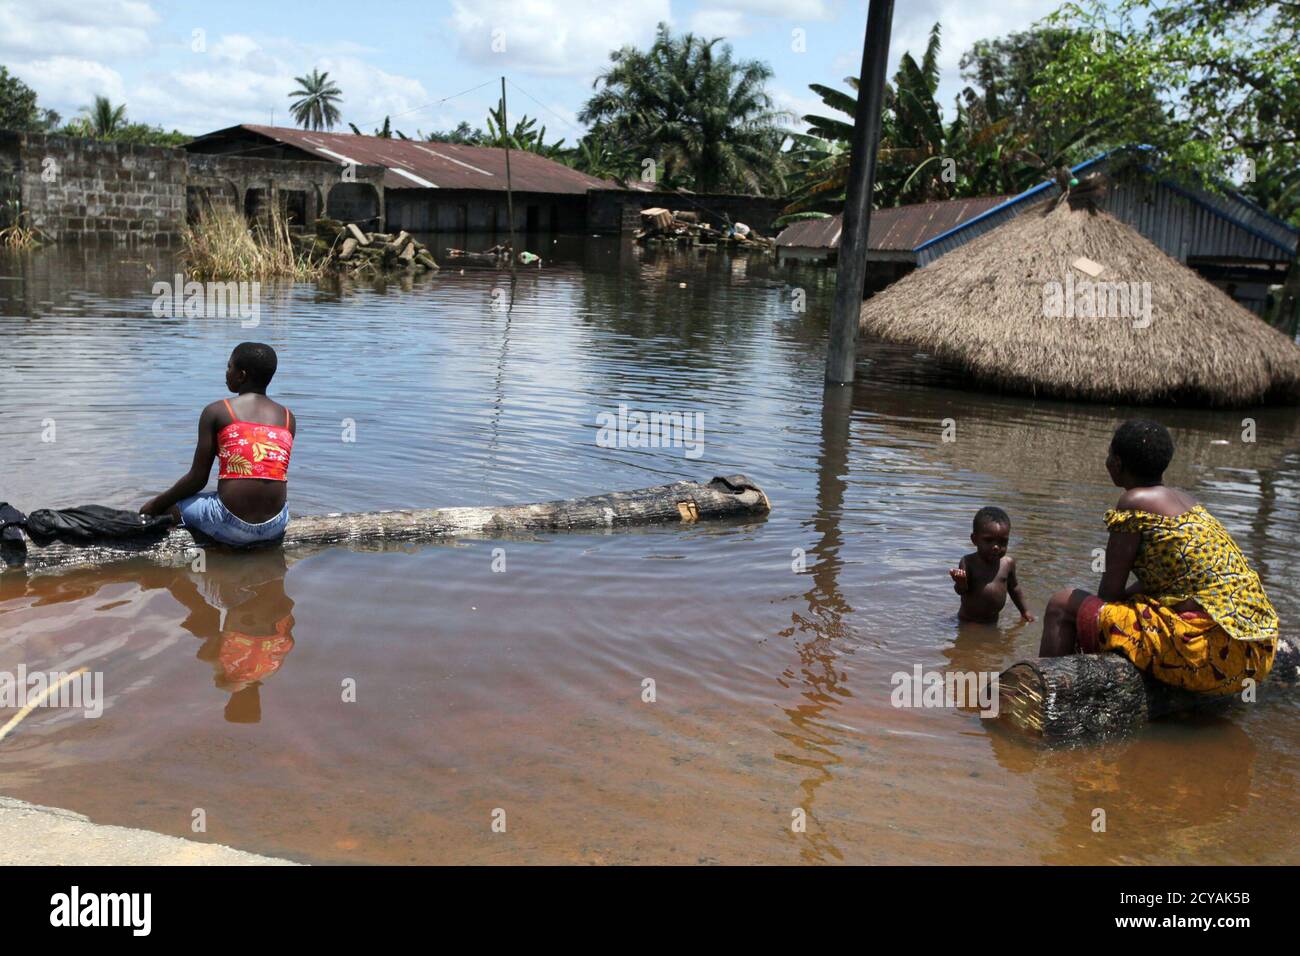 Menschen sitzen vor einem untergetauchten Gebäude in der Patani-Gemeinde im nigerianischen Delta-Staat 15. Oktober 2012. Weite Teile der bevölkerungsreichsten Nation Afrikas wurden in den letzten Wochen von Überschwemmungen überflutet, da große Flüsse wie der Niger, der drittlängste des Kontinents, ihre Ufer sprengen. Mindestens 140 Menschen wurden getötet, Hunderttausende entwurzelt und Zehntausende Hektar Ackerland sind seit Anfang Juli untergetaucht worden, was Bedenken hinsichtlich der Ernährungssicherheit aufwirft, sagte die National Emergency Management Agency (NEMA). REUTERS/Afolabi Sotunde (NIGERIA - Tags: DESASTER SOCI Stockfoto